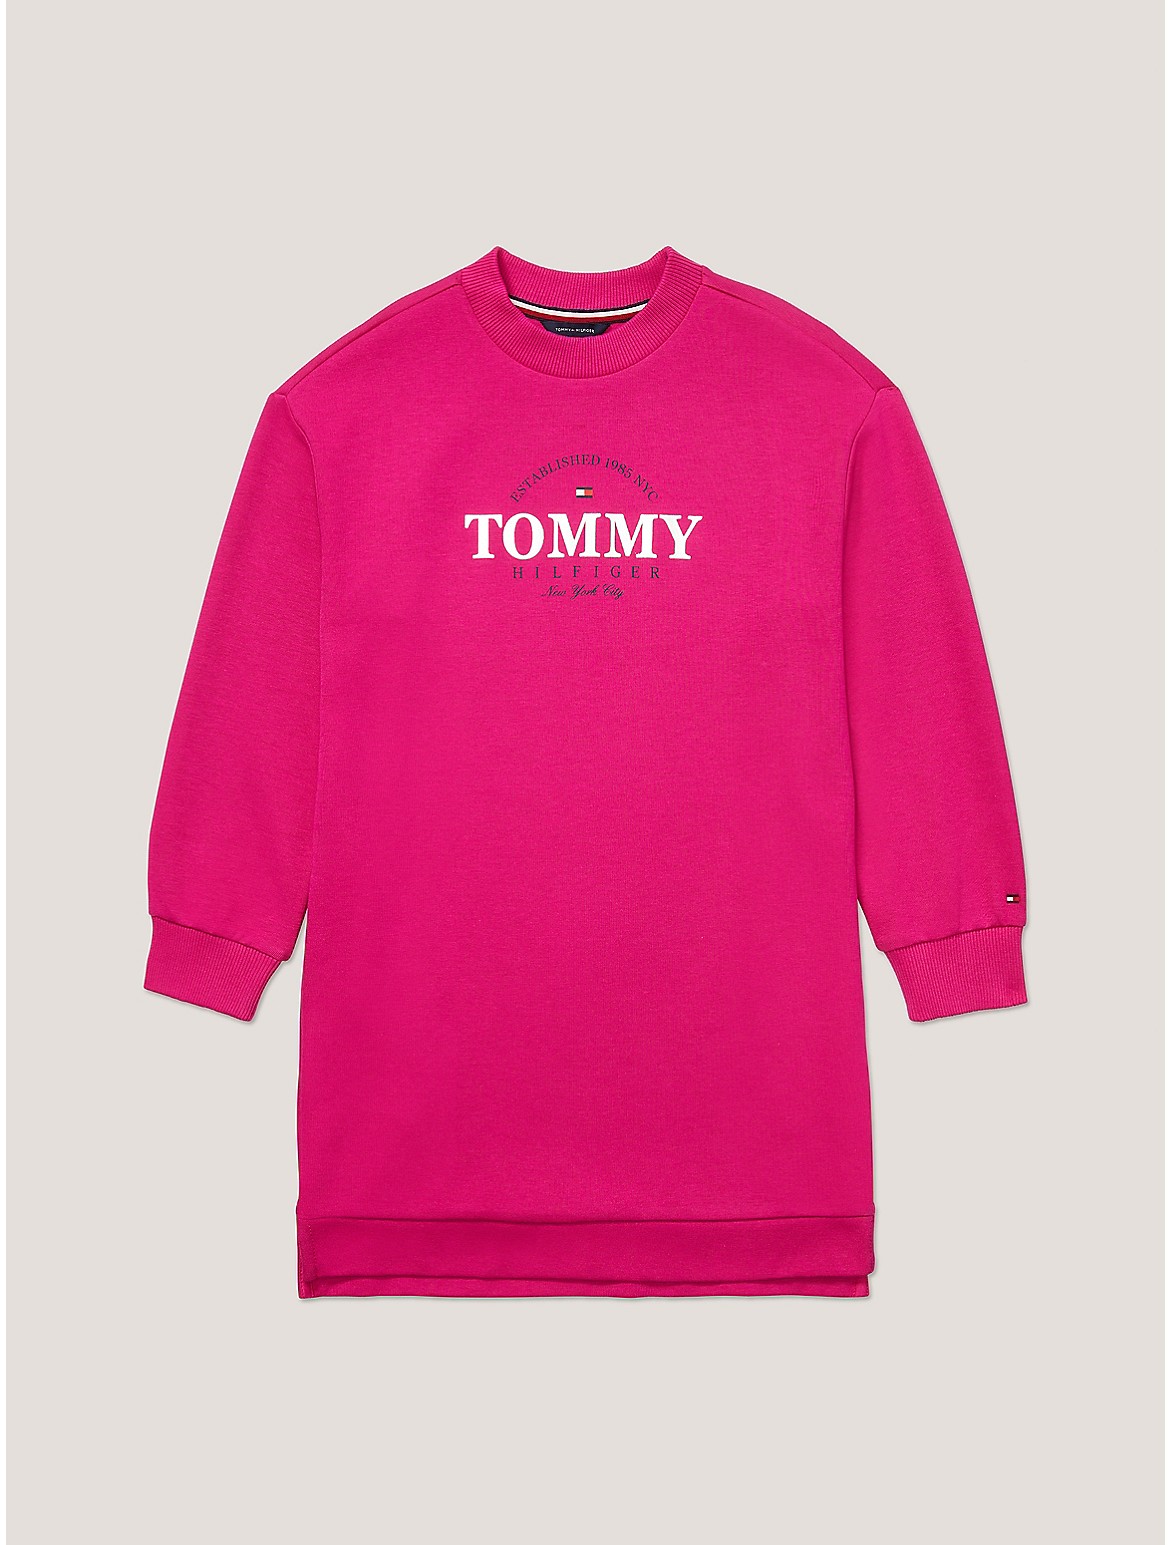  Dress Tommy shirtr